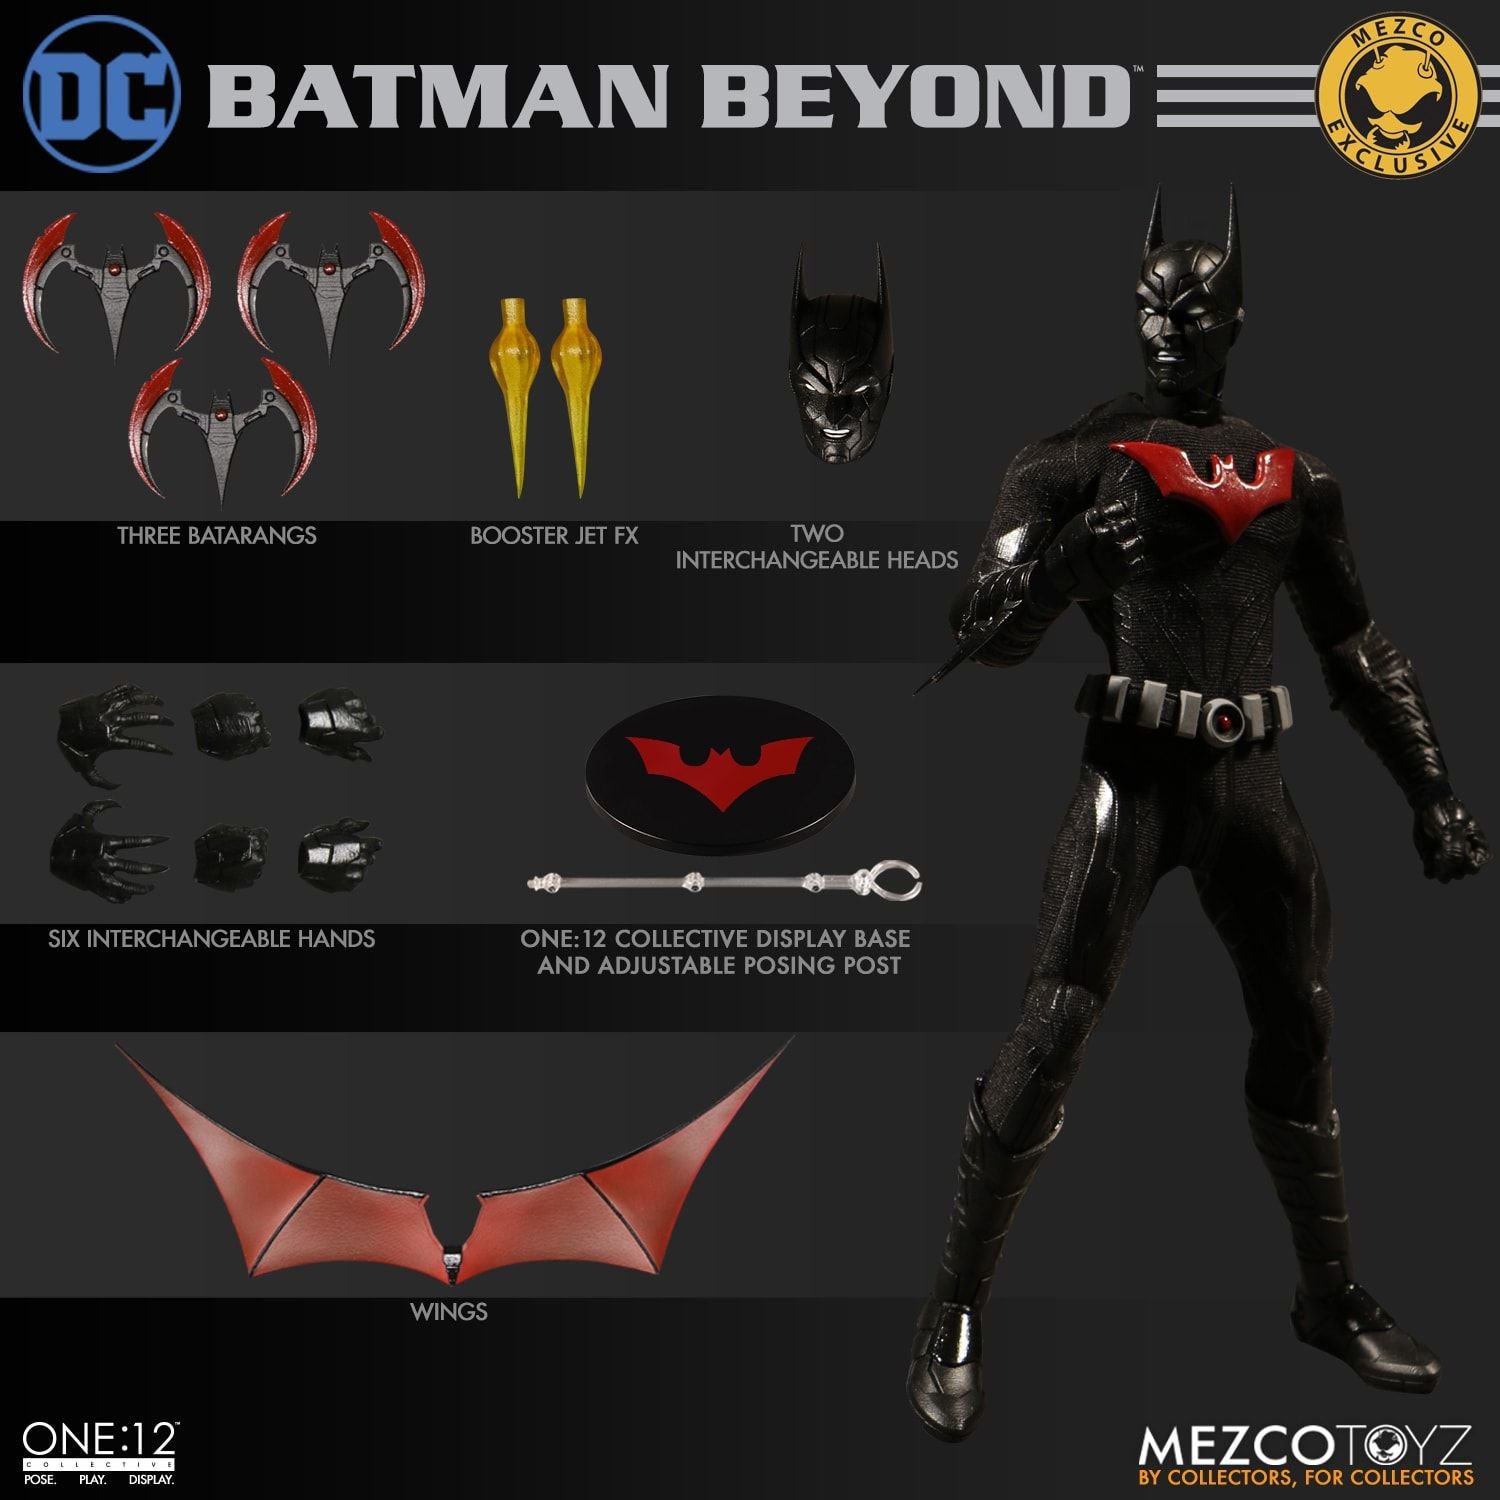 Mua Mezco Toys One:12 Collective: Batman Beyond - Summer Exclusive trên  Amazon Mỹ chính hãng 2023 | Giaonhan247